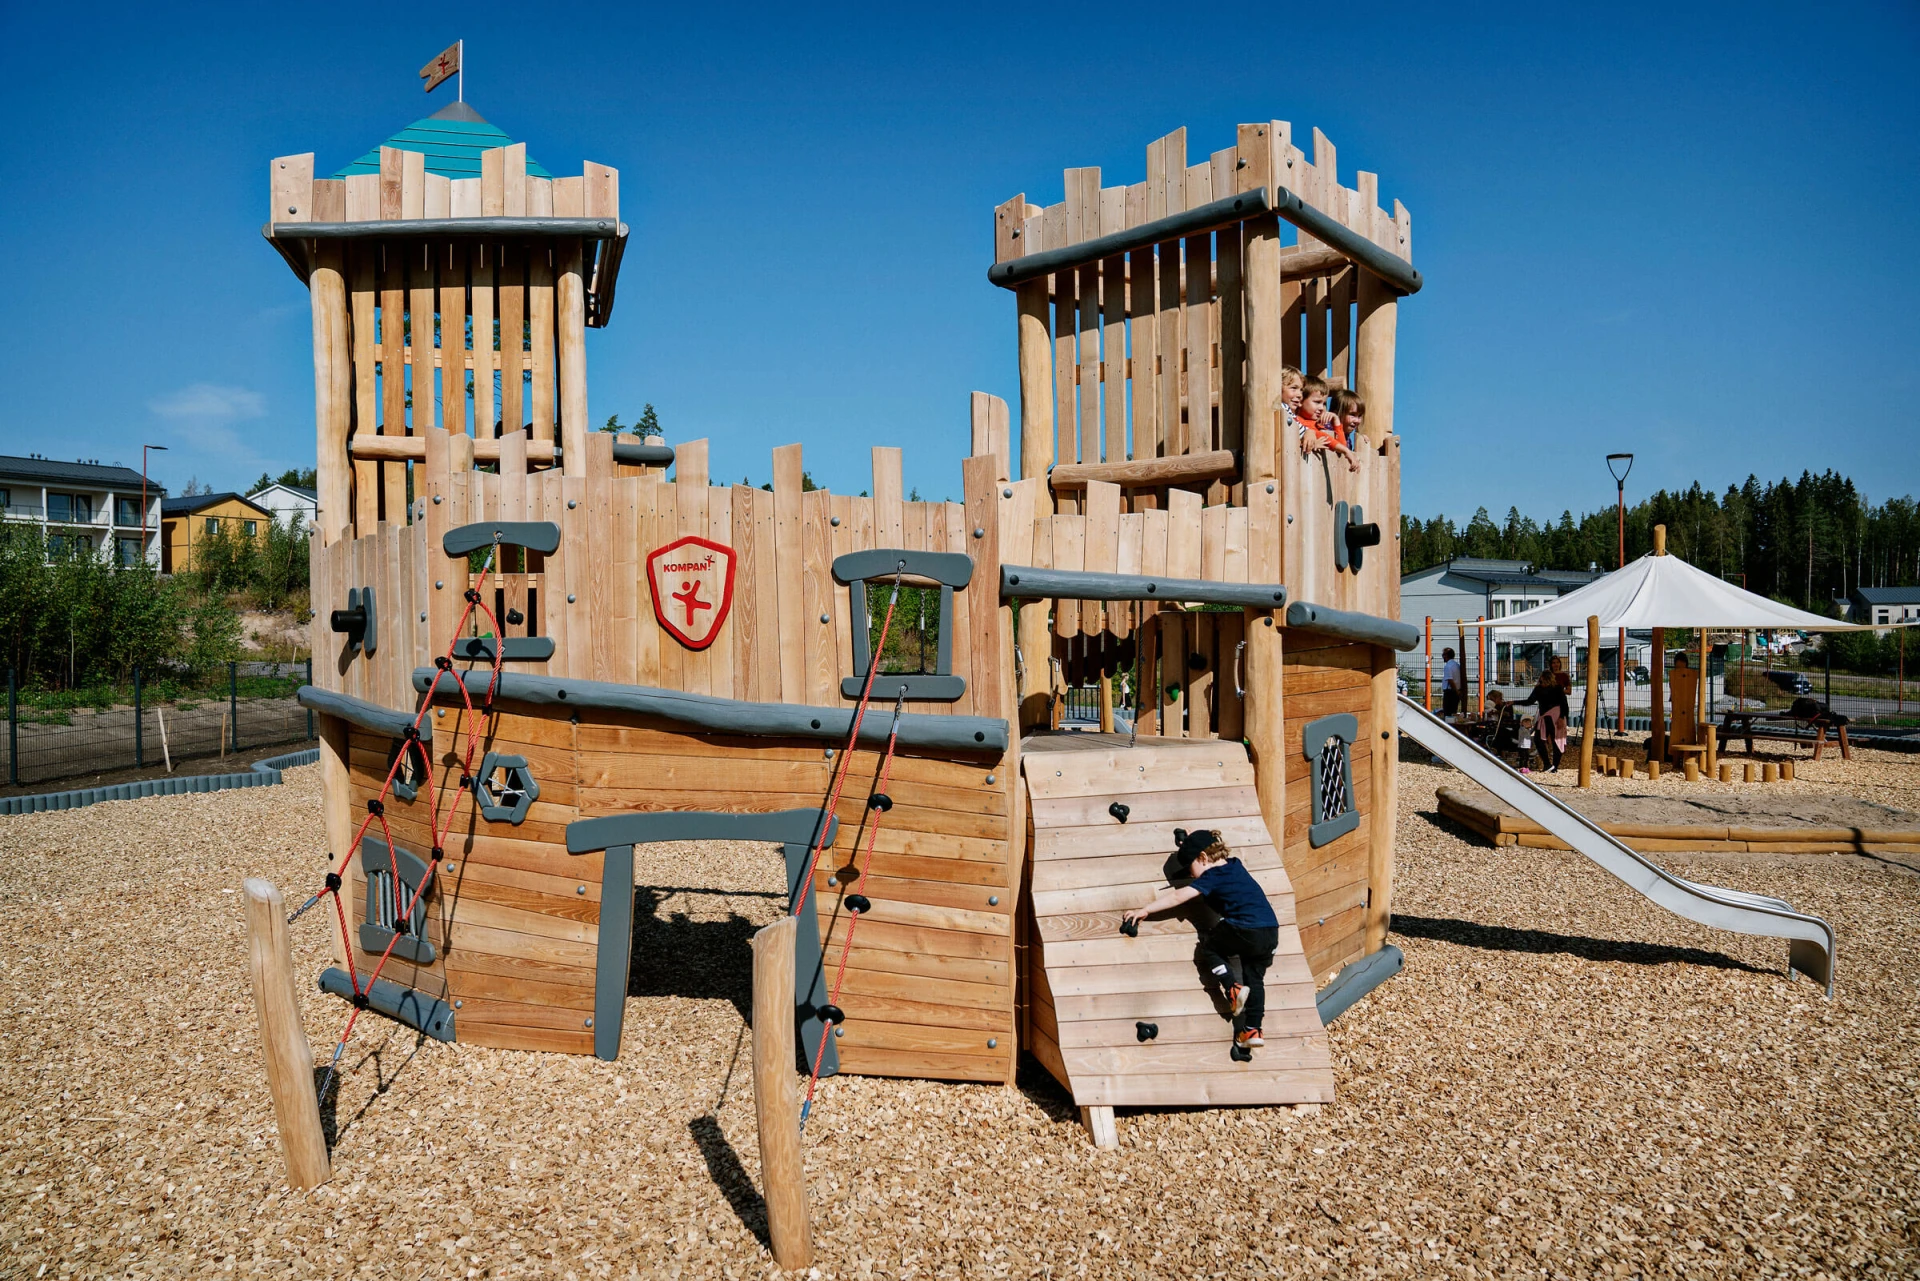 Spielplatzschloss aus Holz in Finnland